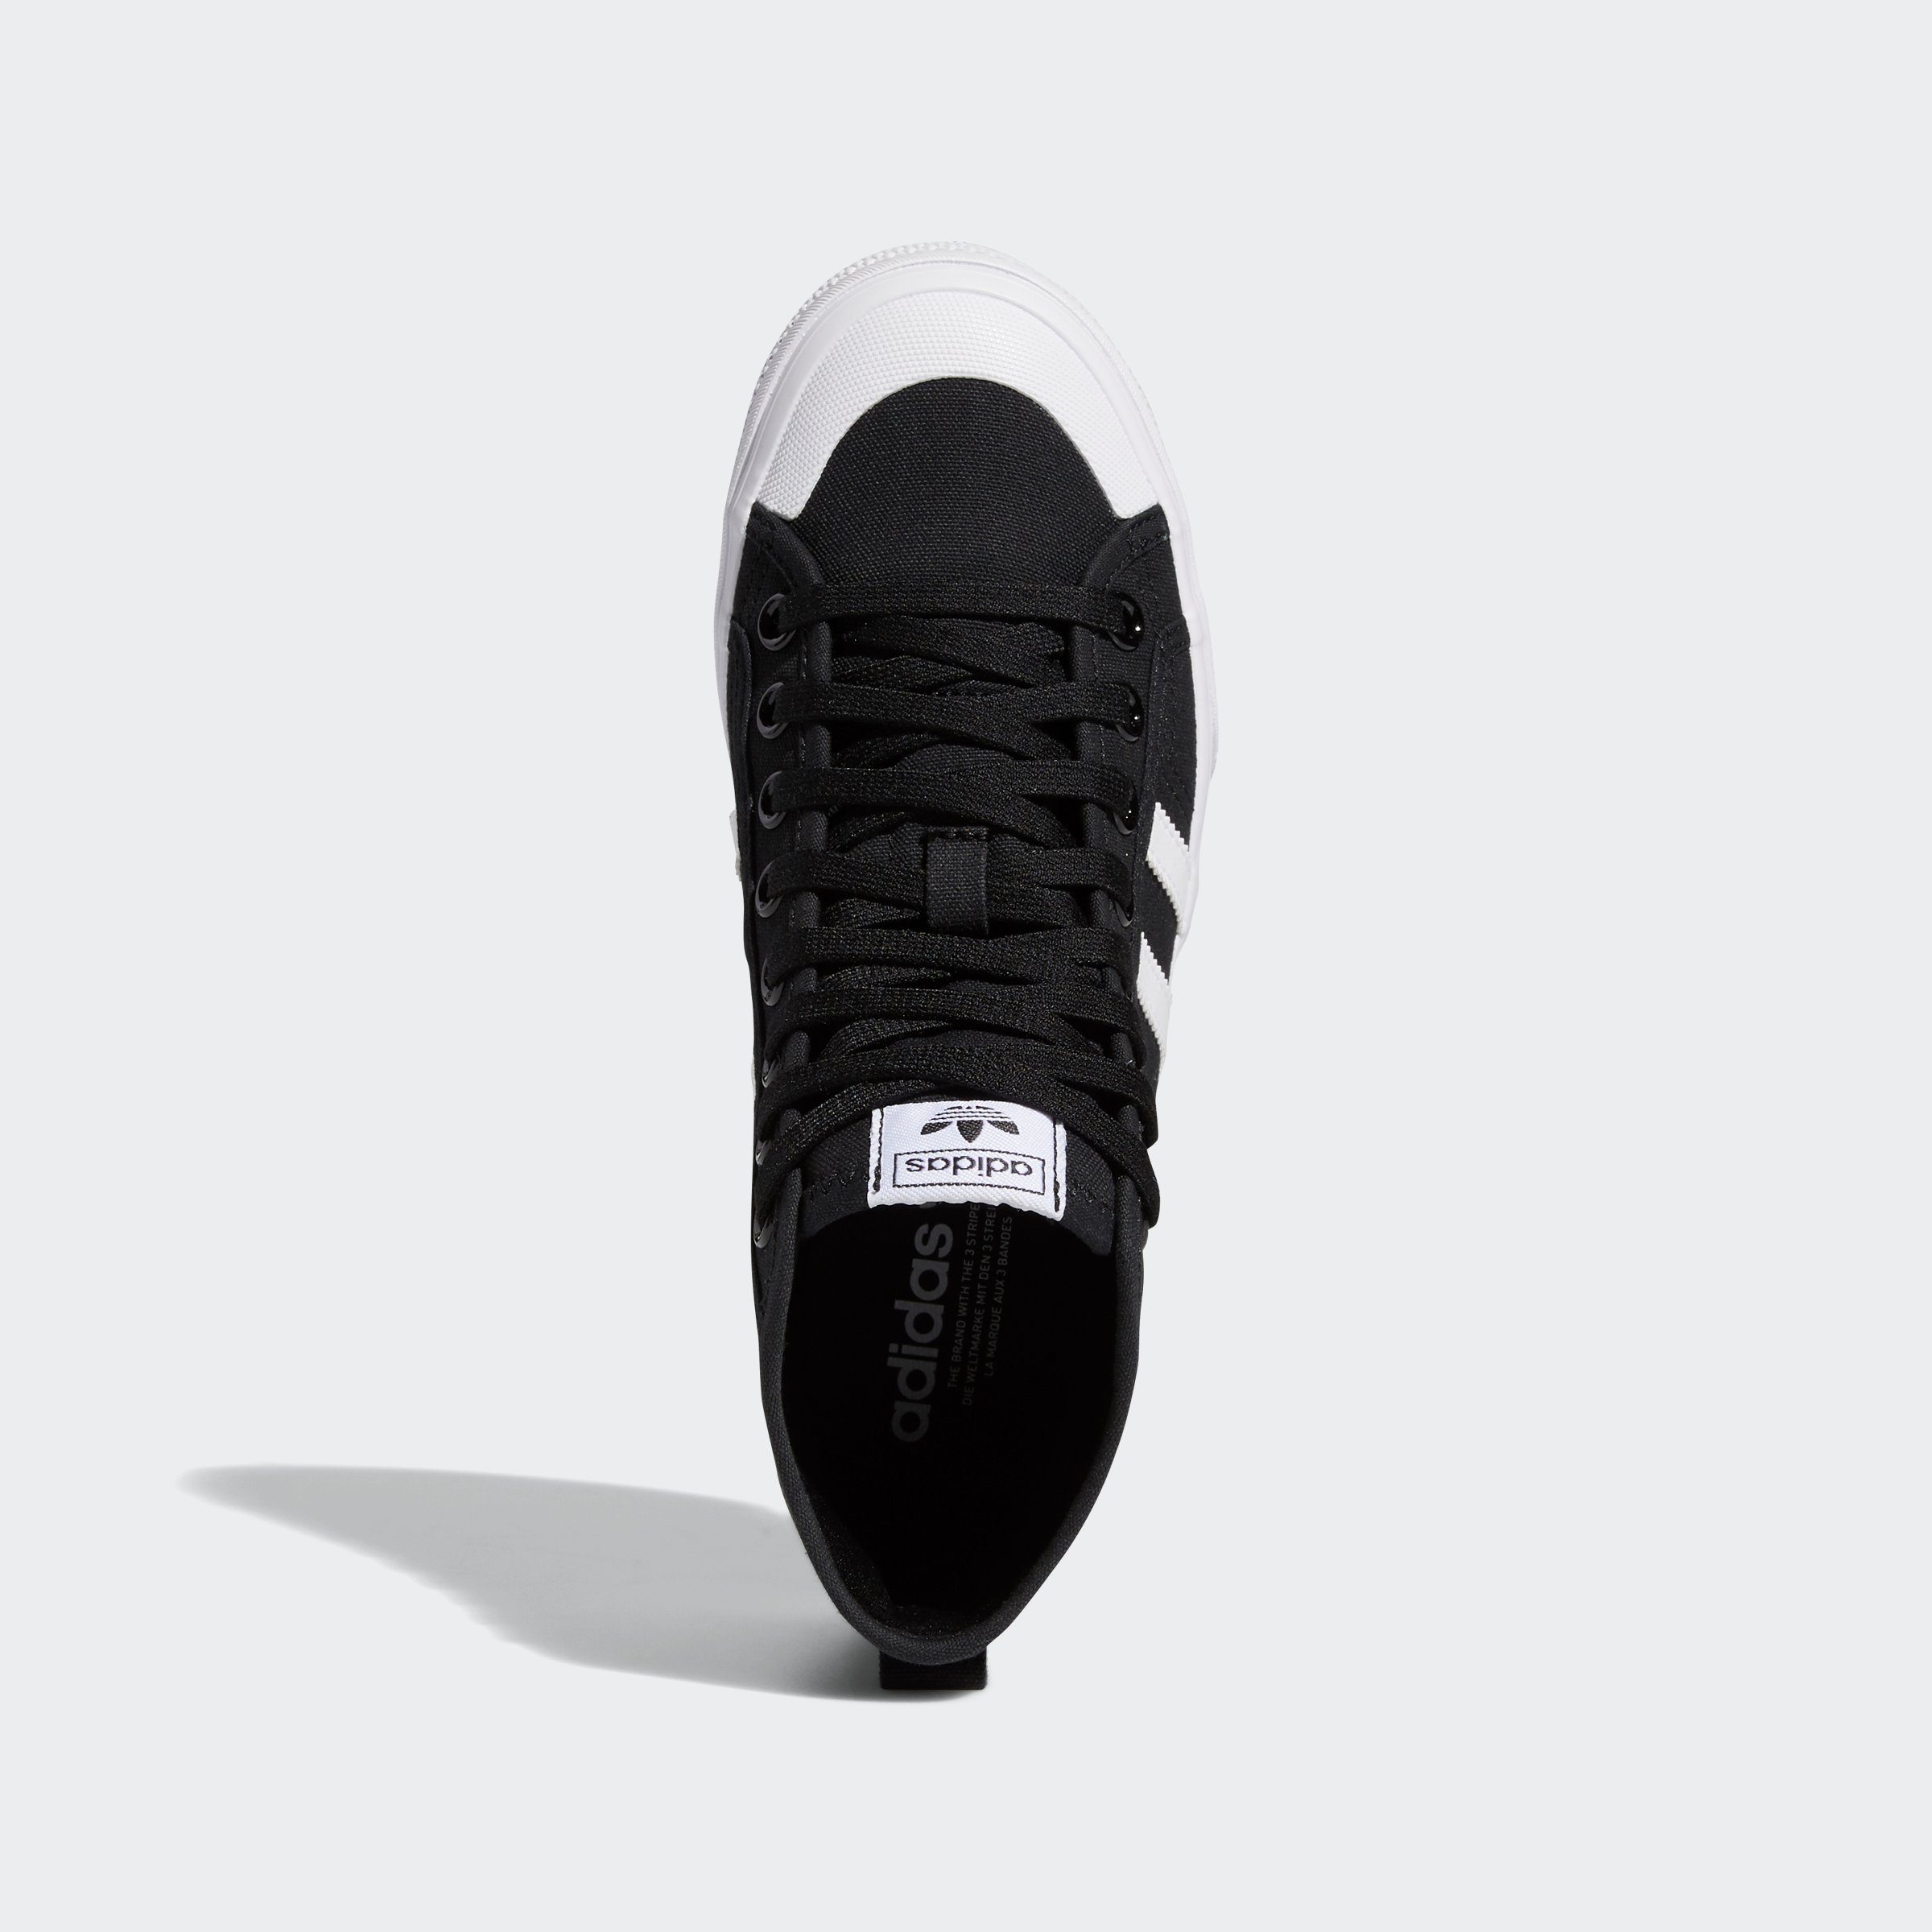 / PLATFORM White adidas NIZZA Core Cloud Originals White MID / Cloud Black Sneaker